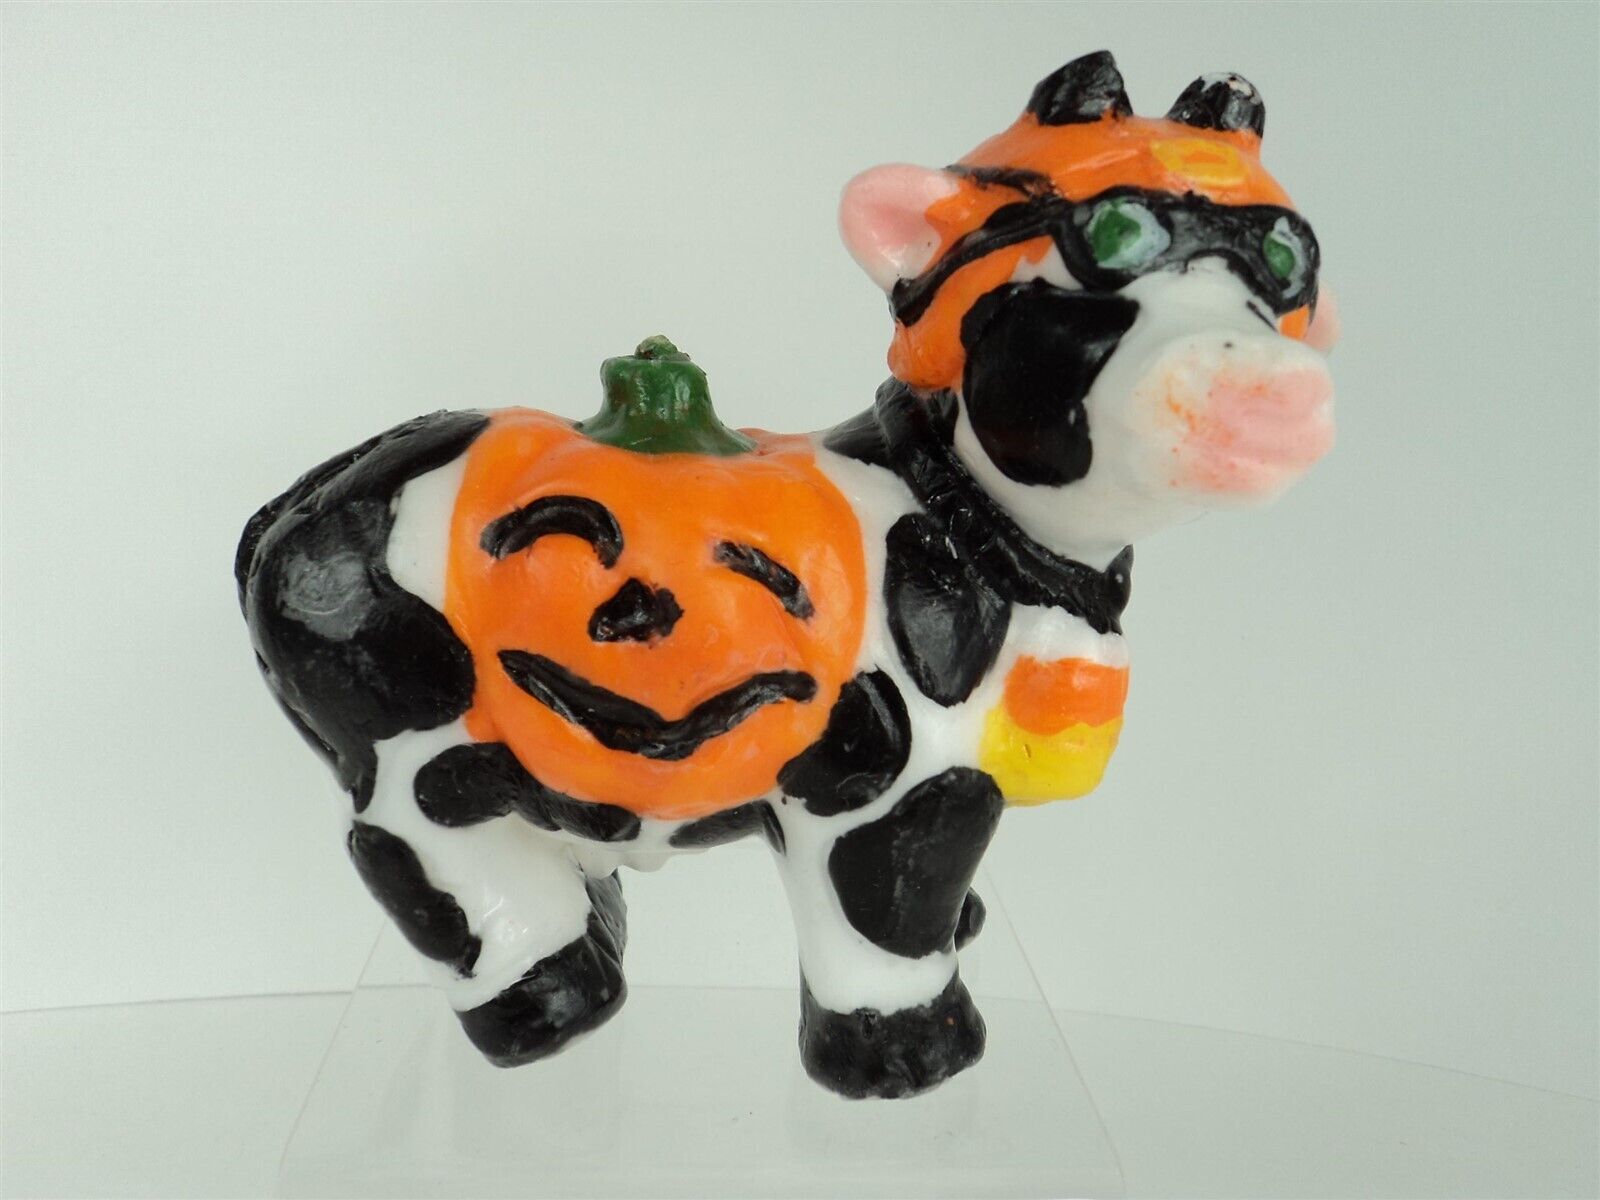 Cow in pumpkin halloween costume